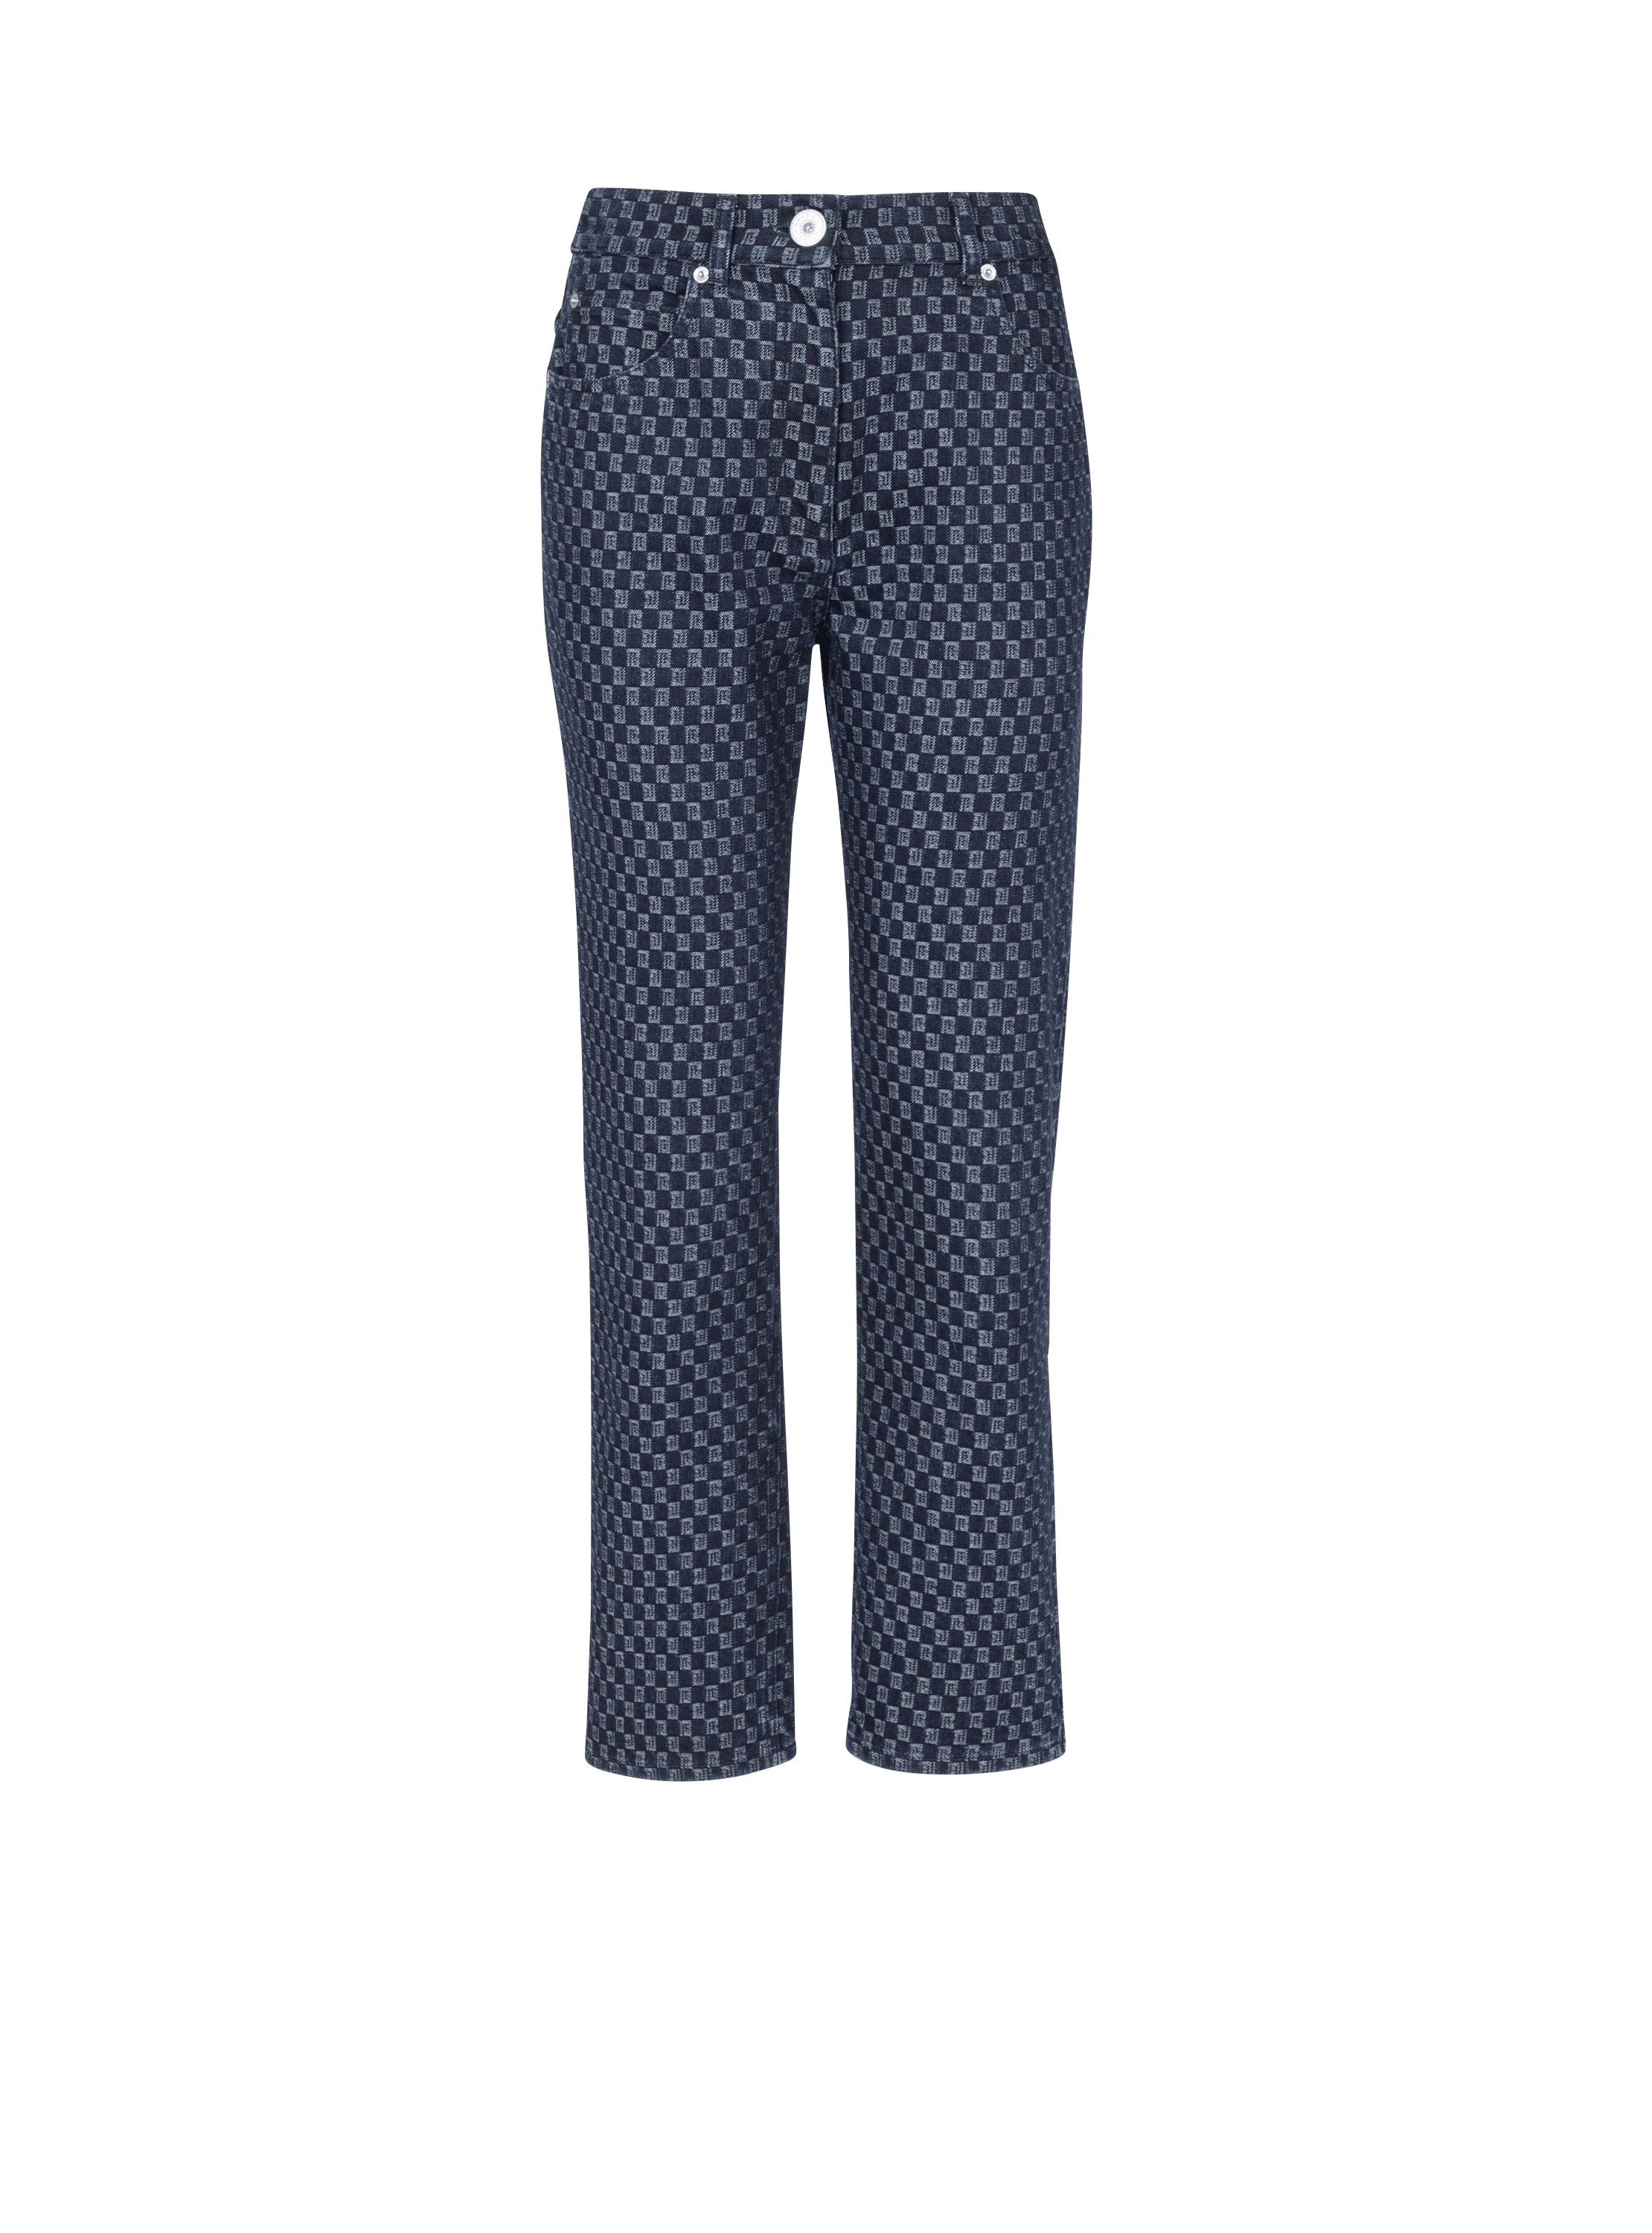 Pantalones de tela vaquera con monograma pequeño, azul marino, hi-res